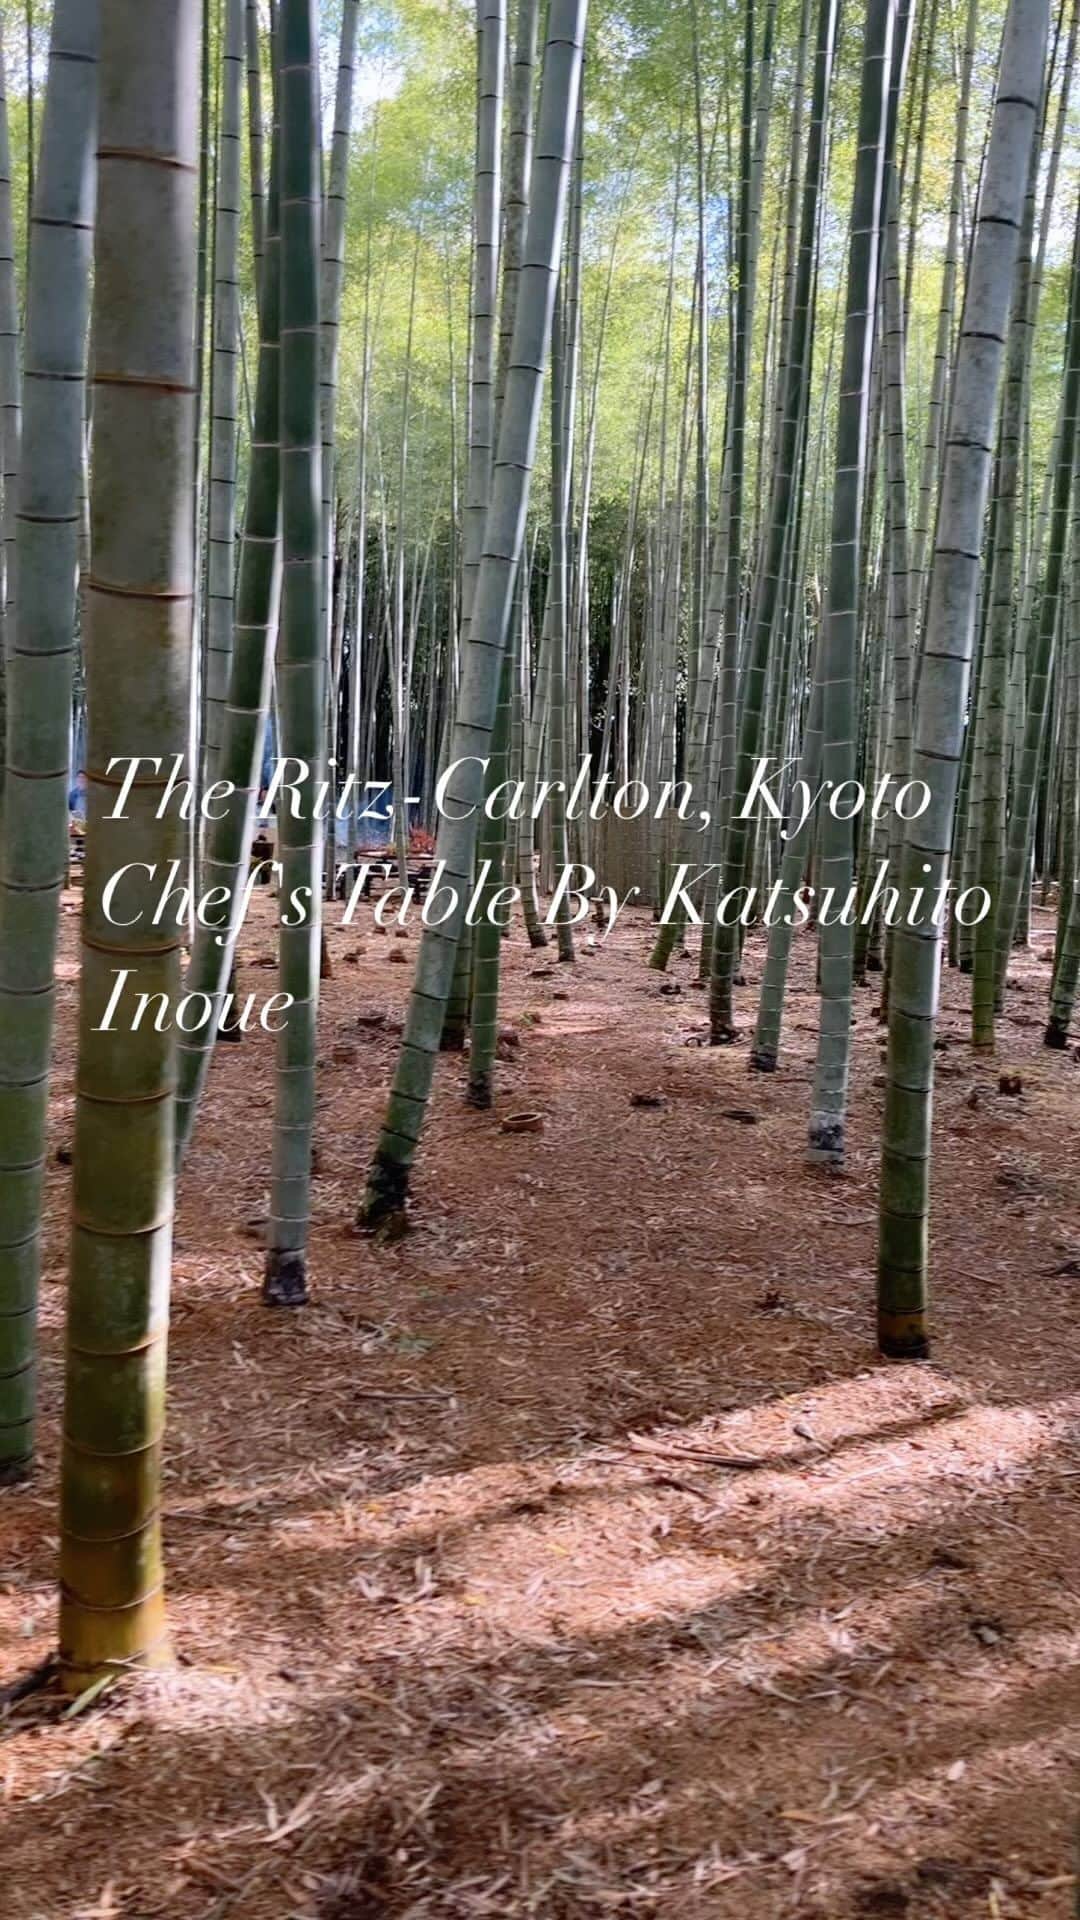 INSIDE FUJINGAHOのインスタグラム：「「ザ・リッツ・カールトン京都」の一角にある「シェフズ・テーブル by Katsuhito Inoue」。シェフの井上勝人さんが、四季を細分化した暦「二十四節気七十二候」をモチーフにメニューを組み立て、食卓を通じてその時々の季節の気配を感じさせてくれます。 2023年11月には、嵯峨嵐山・大覚寺の裏手にある竹林に特別設置された会場で数日間、屋外でのプレゼンテーションを実施。プレスデーに充てられた17日に私、体験してきました。当日は二十四節気七十二候では「地始凍（ちはじめてこおる）」。冬の冷気のなかで大地が凍り始め。 朝は霜が降るような日とされています。 この日、この会場のために考えられたメニューは以下の10品余。それぞれにワイン、ノンアルをペアリングされ、井上シェフの仕上げる繊細な季節の表現に寄り添ってくれます。  ❶自然の恵み　コンソメ ❷琵琶湖子持ち鮎　ポレンタ ❸貝の直火焼き ❹焦がし野菜パウダーフォカッチャ包み焼き ❺近江牛三角バラ ❻季節の野菜の竹蒸し焼き　にんにくと鮒鮨のとも和え ❼まながつおのカルトッチョ　赤万願寺唐辛子柚子味噌 ❽鴨の赤米酒粕漬け　森の香り ❾もづく蟹と祝い米のリゾット ➓燻製チーズケーキ　山ぶどうソース ⓫焼き芋  竹林のなかの会場の設営には、筍農家が減少して荒れている京都の竹林の保全と再生に取り組む「アドプランツコーポレーション」代表、増永滋生さんが協力。竹林のなかで手に入るものでテーブルを組み立て、カトラリーを作り、火をおこす。この空間で数時間を過ごすことで、竹林に対しての危機意識を共有してもらうことも、シェフズテーブルの内容に織り込まれました。お土産に配られたのは、竹林整備をする際に発生する竹チップを土壌に生かして育てた会場となった嵯峨産の「古今嵯峨米」。晩秋のこの瞬間しか味わえない貴重な食体験、次回は未定ですが、情報が入りましたらあらためてお知らせいたします（編集G）。  ＃theritzcarltonkyoto ＃chefstablebykatsuhitoInoue ＃ザリッツカールトン京都 ＃シェフズテーブルバイ井上勝人 ＃嵯峨野 ＃京都の竹林再生 ＃古今嵯峨米 ＃京都のシェフズテーブル #婦人画報  #fujingahojp」